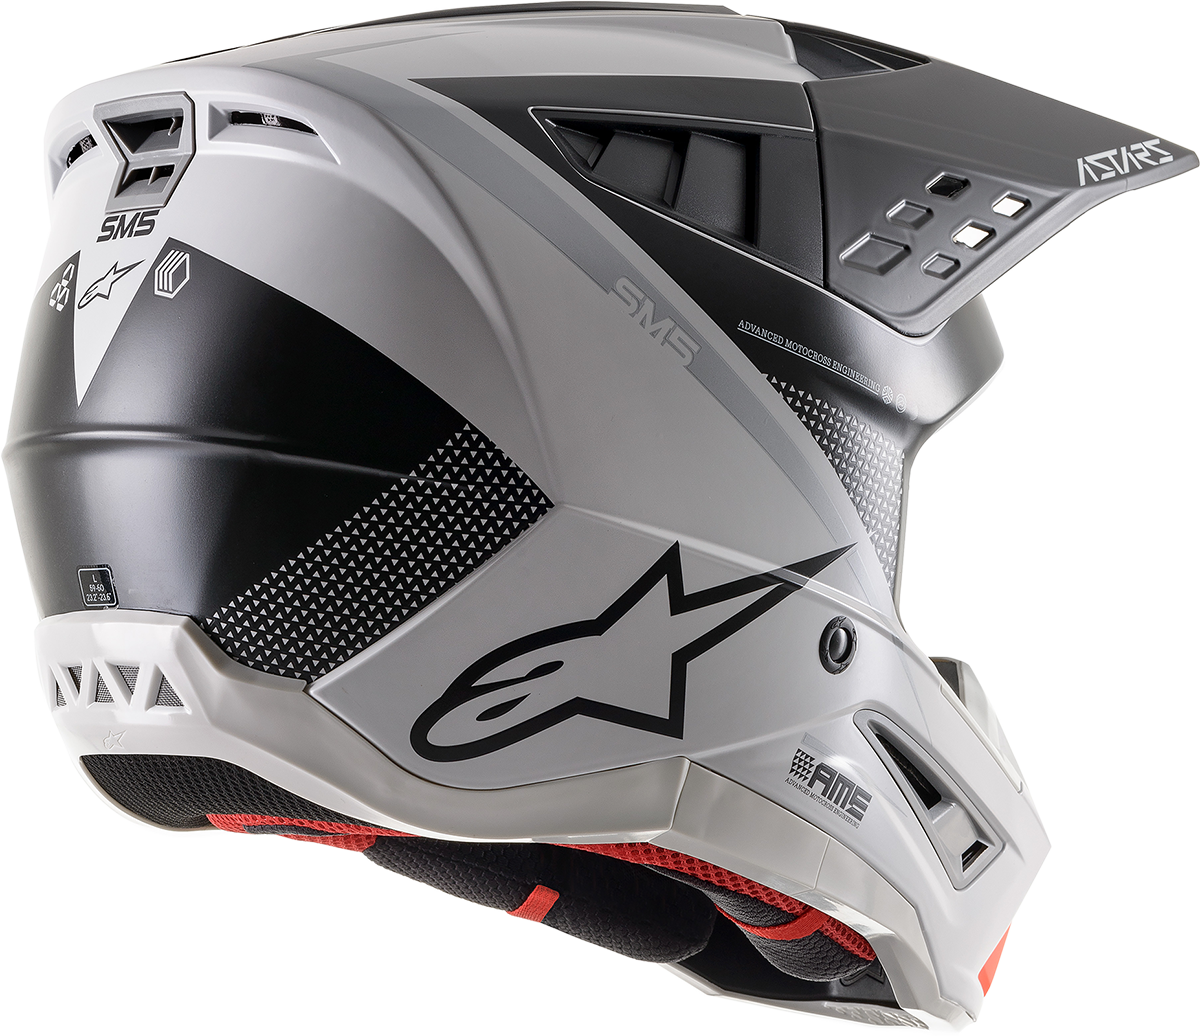 ALPINESTARS SM5 Helmet - Rayon - Gray/Black/Silver - Medium 8304121-928-MD